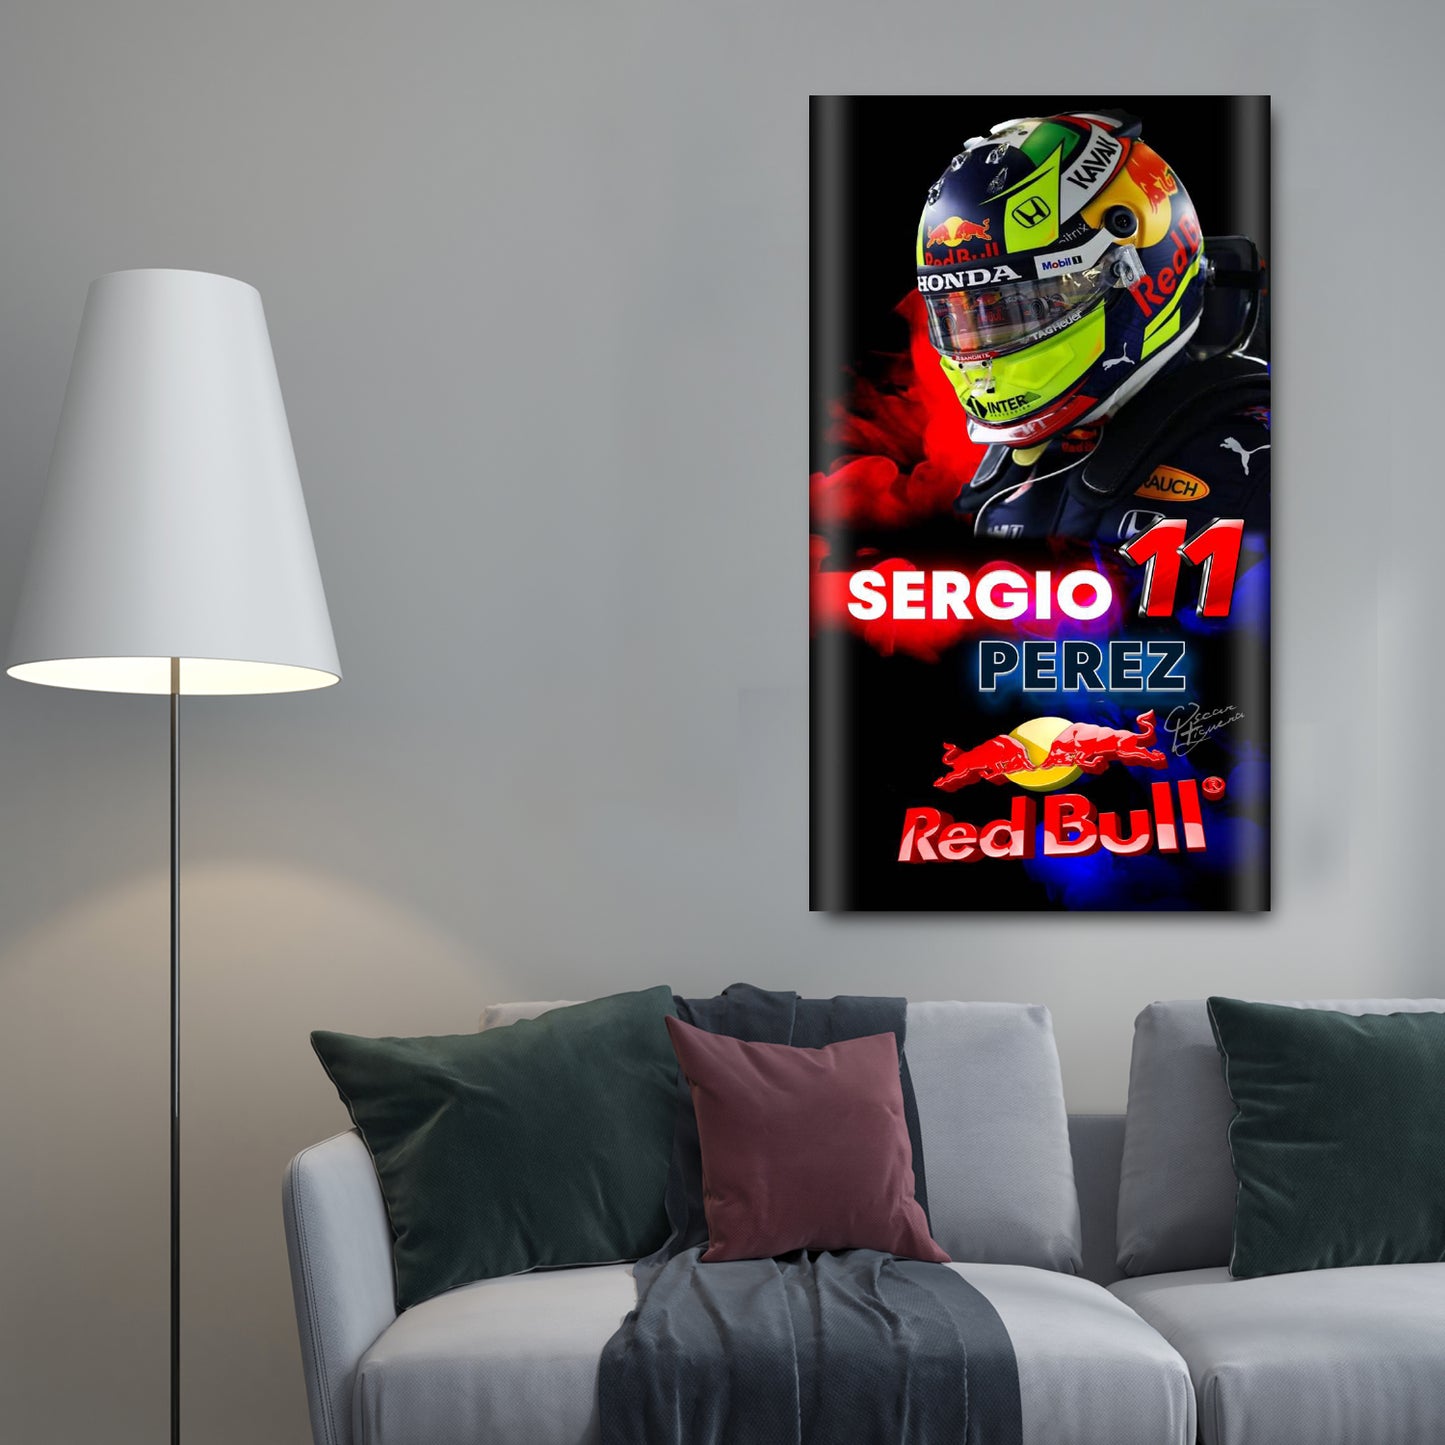 Sergio Perez Red Bull - Maxigráfica Shop